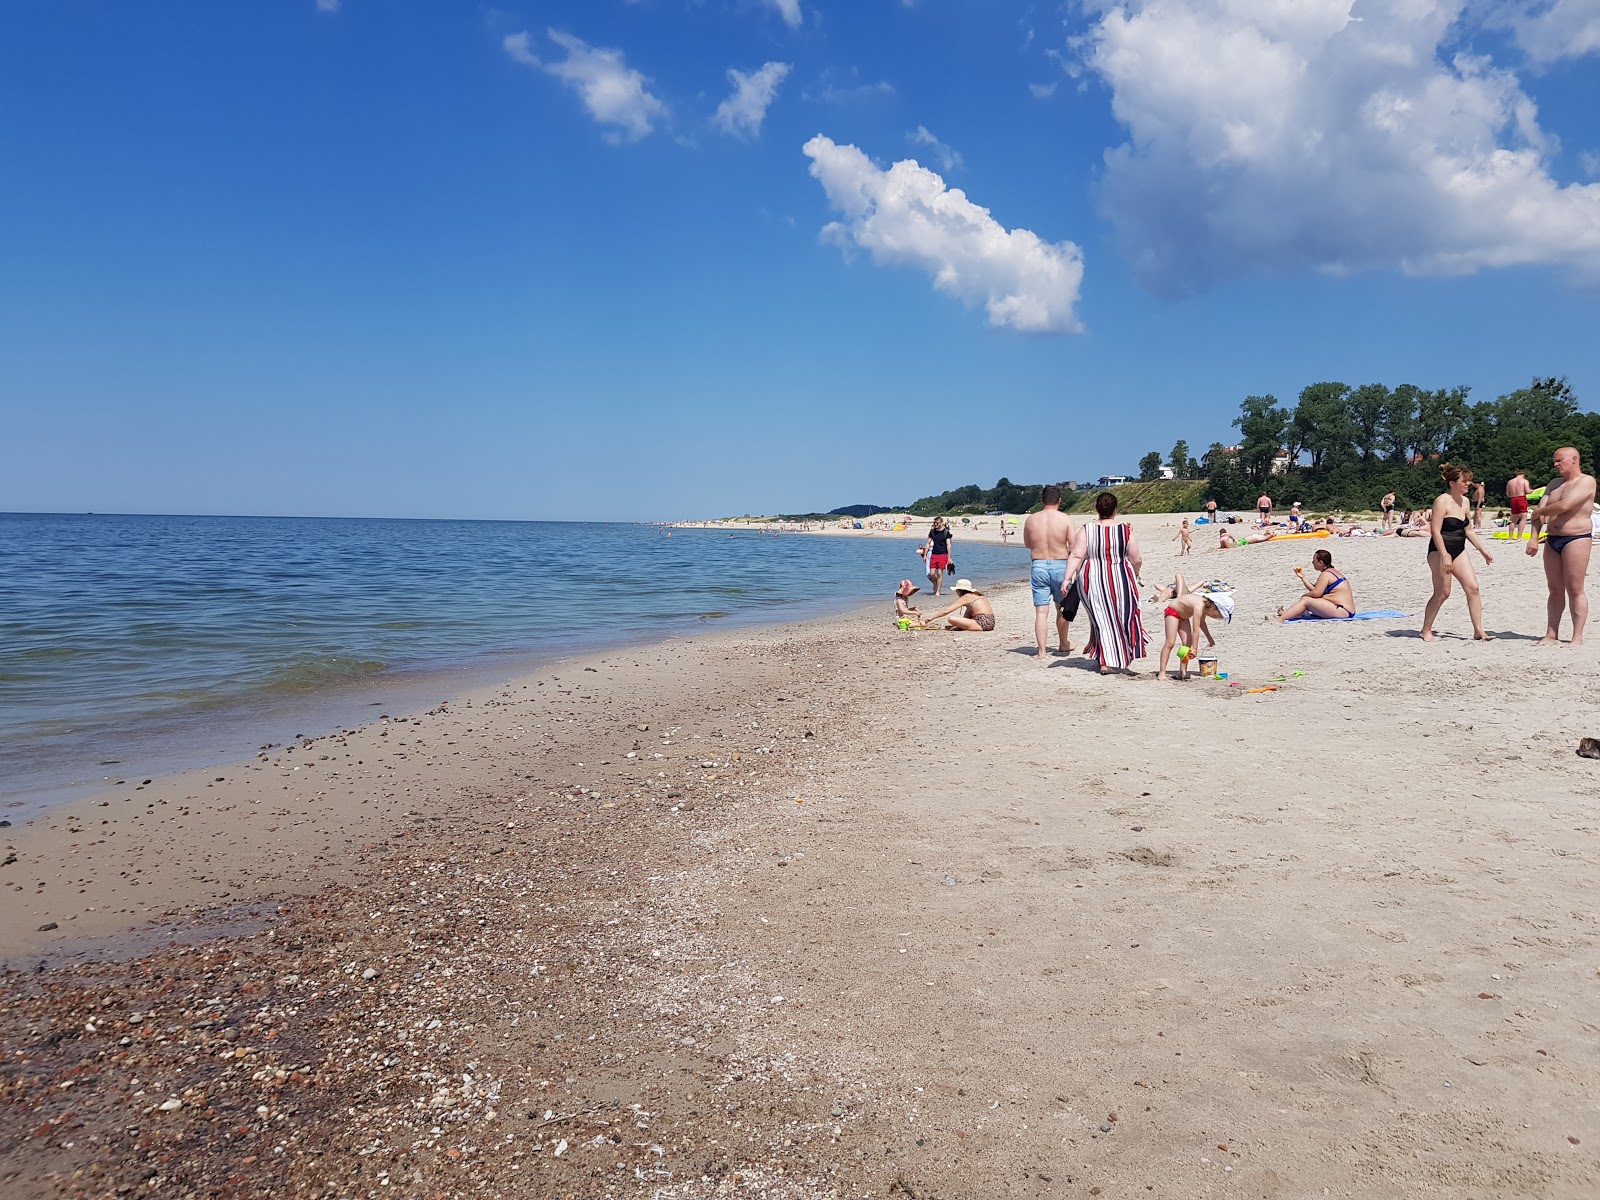 Foto de Yantarnyy Plaj com areia brilhante superfície